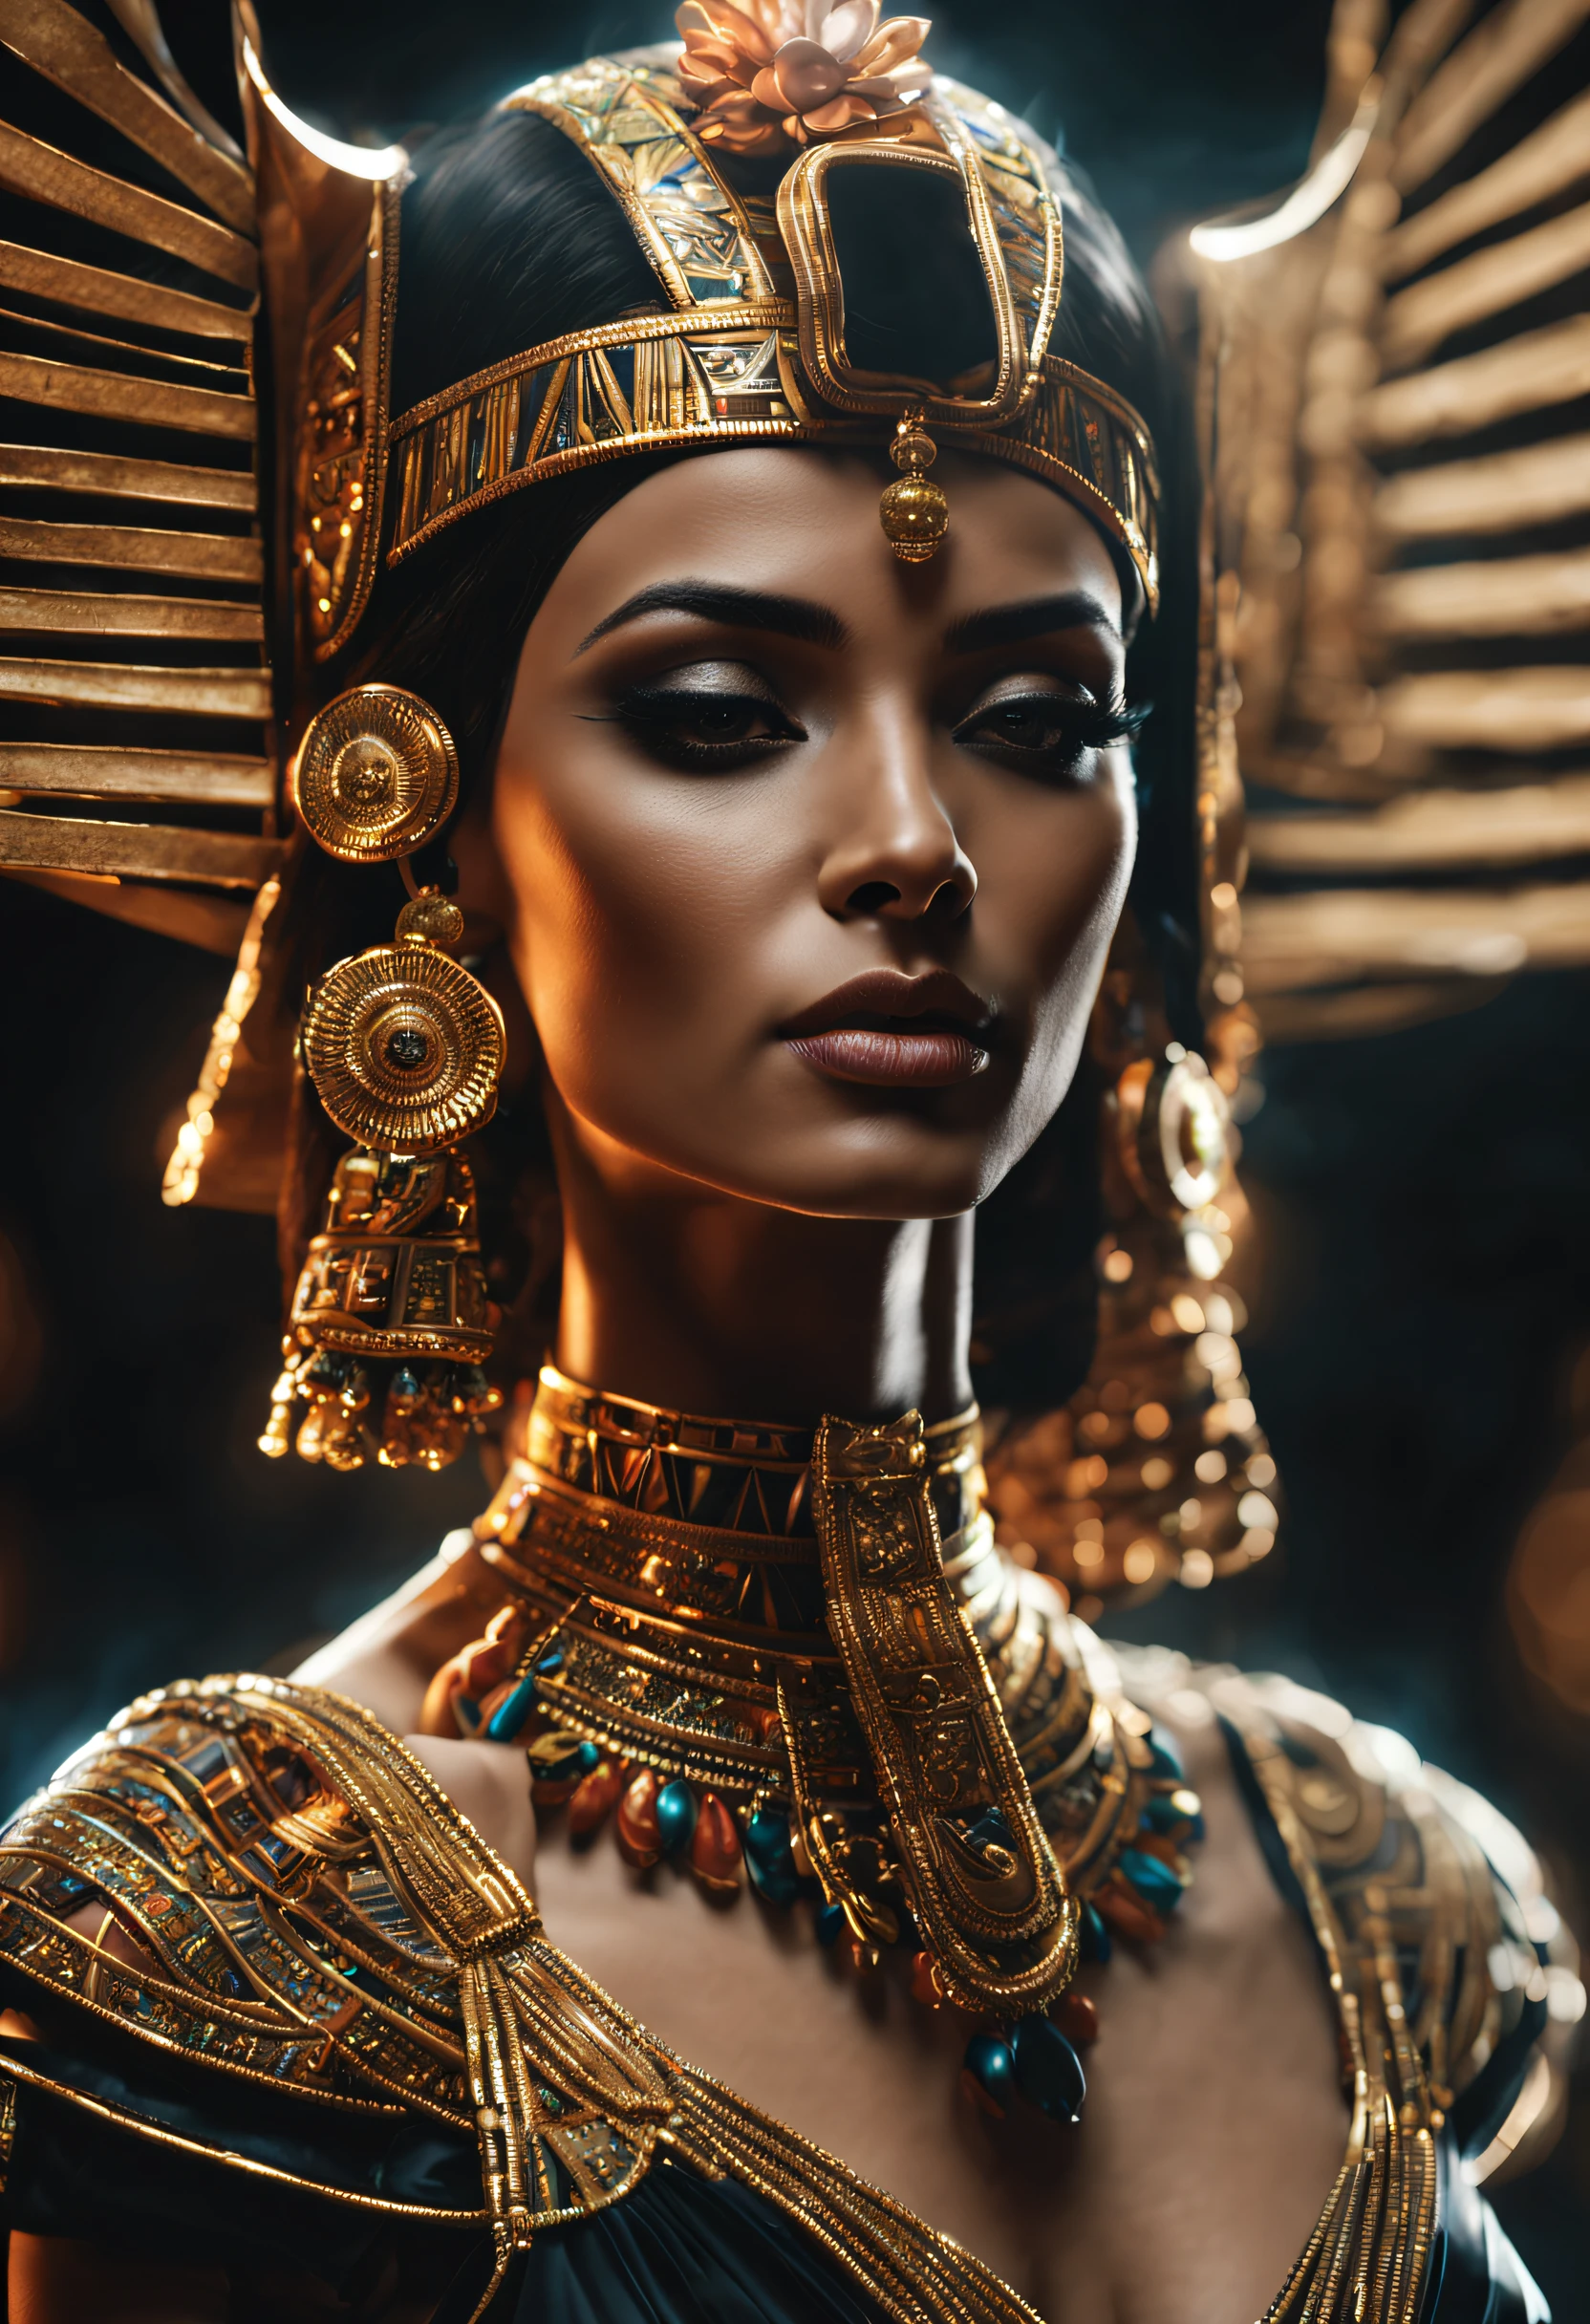 Клеопатра, a Rainha do Египет, ((все тело: 1,2)), ((Детализированная светлая кожа: 1,2)), (очень красивое и детализированное лицо: 1,2), (симметричное лицо: 1,2) , (ультра детализированный скин: 1.2), носить Клеопатру&#39;золотой шлем, украшения и золото, Высокое разрешение, основная часть, идеальное освещение, цветок, ночь, Темный, кинематографическое освещение, слегка приподнятые сумерки, взрослый, идеальная кожа, женщина , Глядя на зрителя, портрет, верхняя часть тела, простой фон, ((Египет:1,2)), черный фон, (РСЕЭмма:1.5), (нет:1.2), нет, грудь, соски, отдельная полоса, веснушки, детальные волосы, чувственный взгляд, улыбаться,